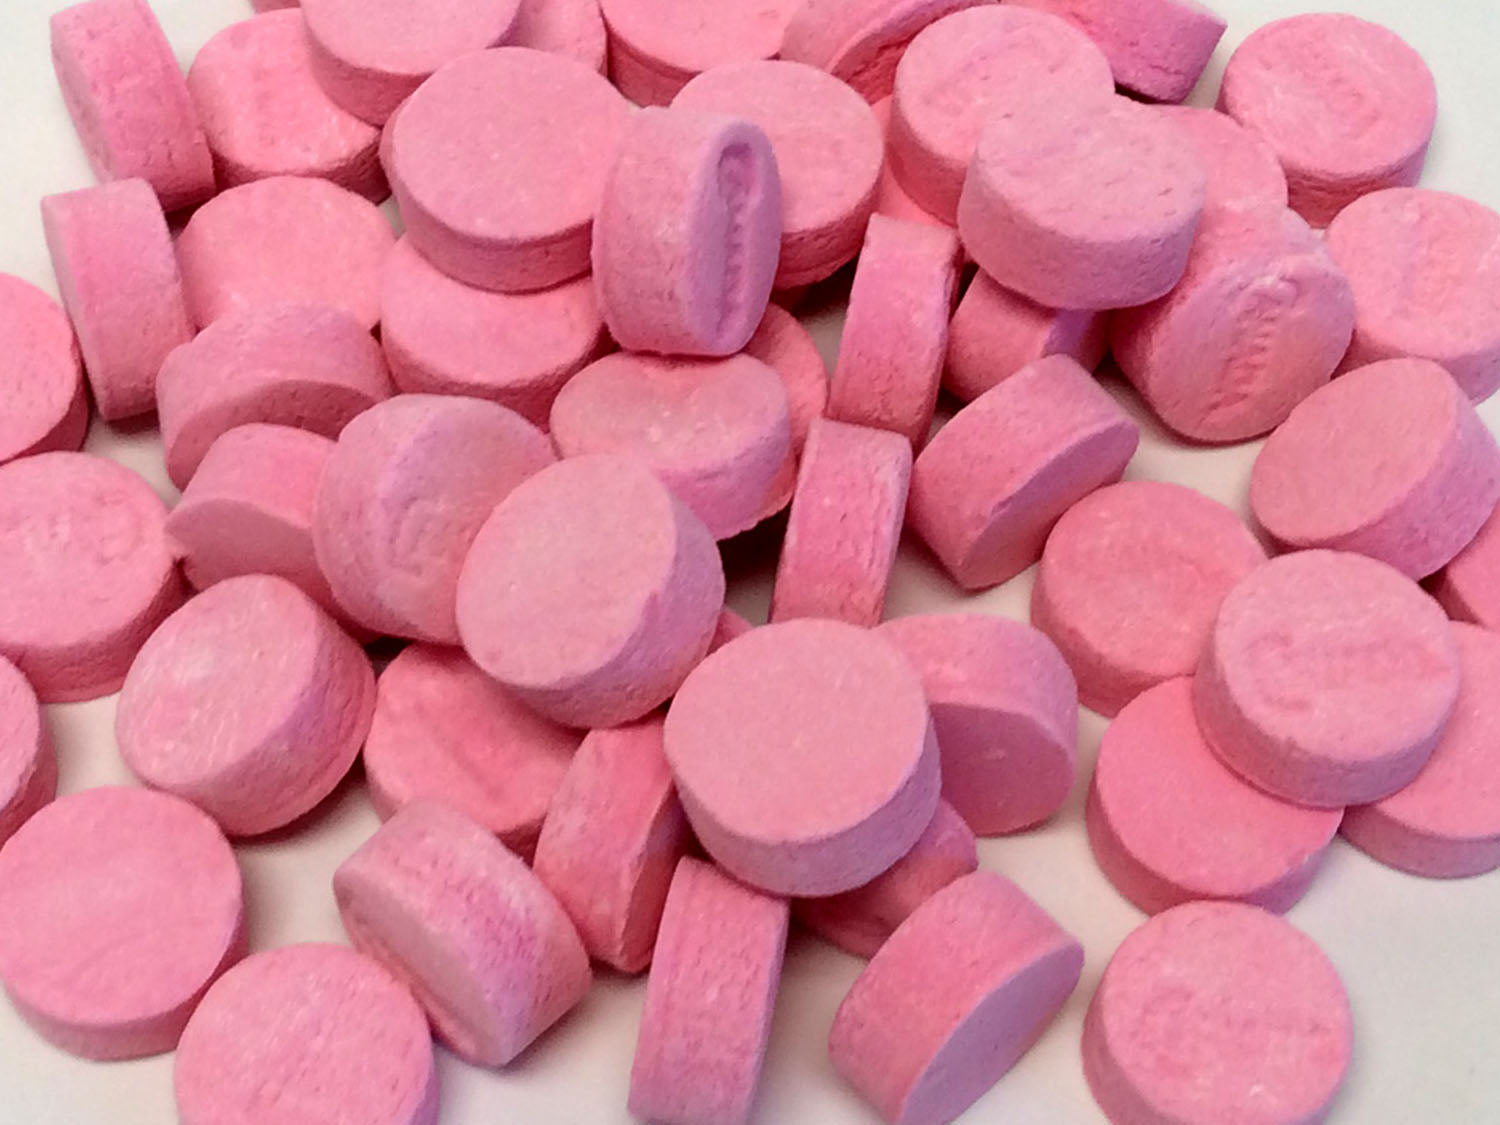 Canada Mints - Wintergreen (pink) - Bulk 3 lb bag